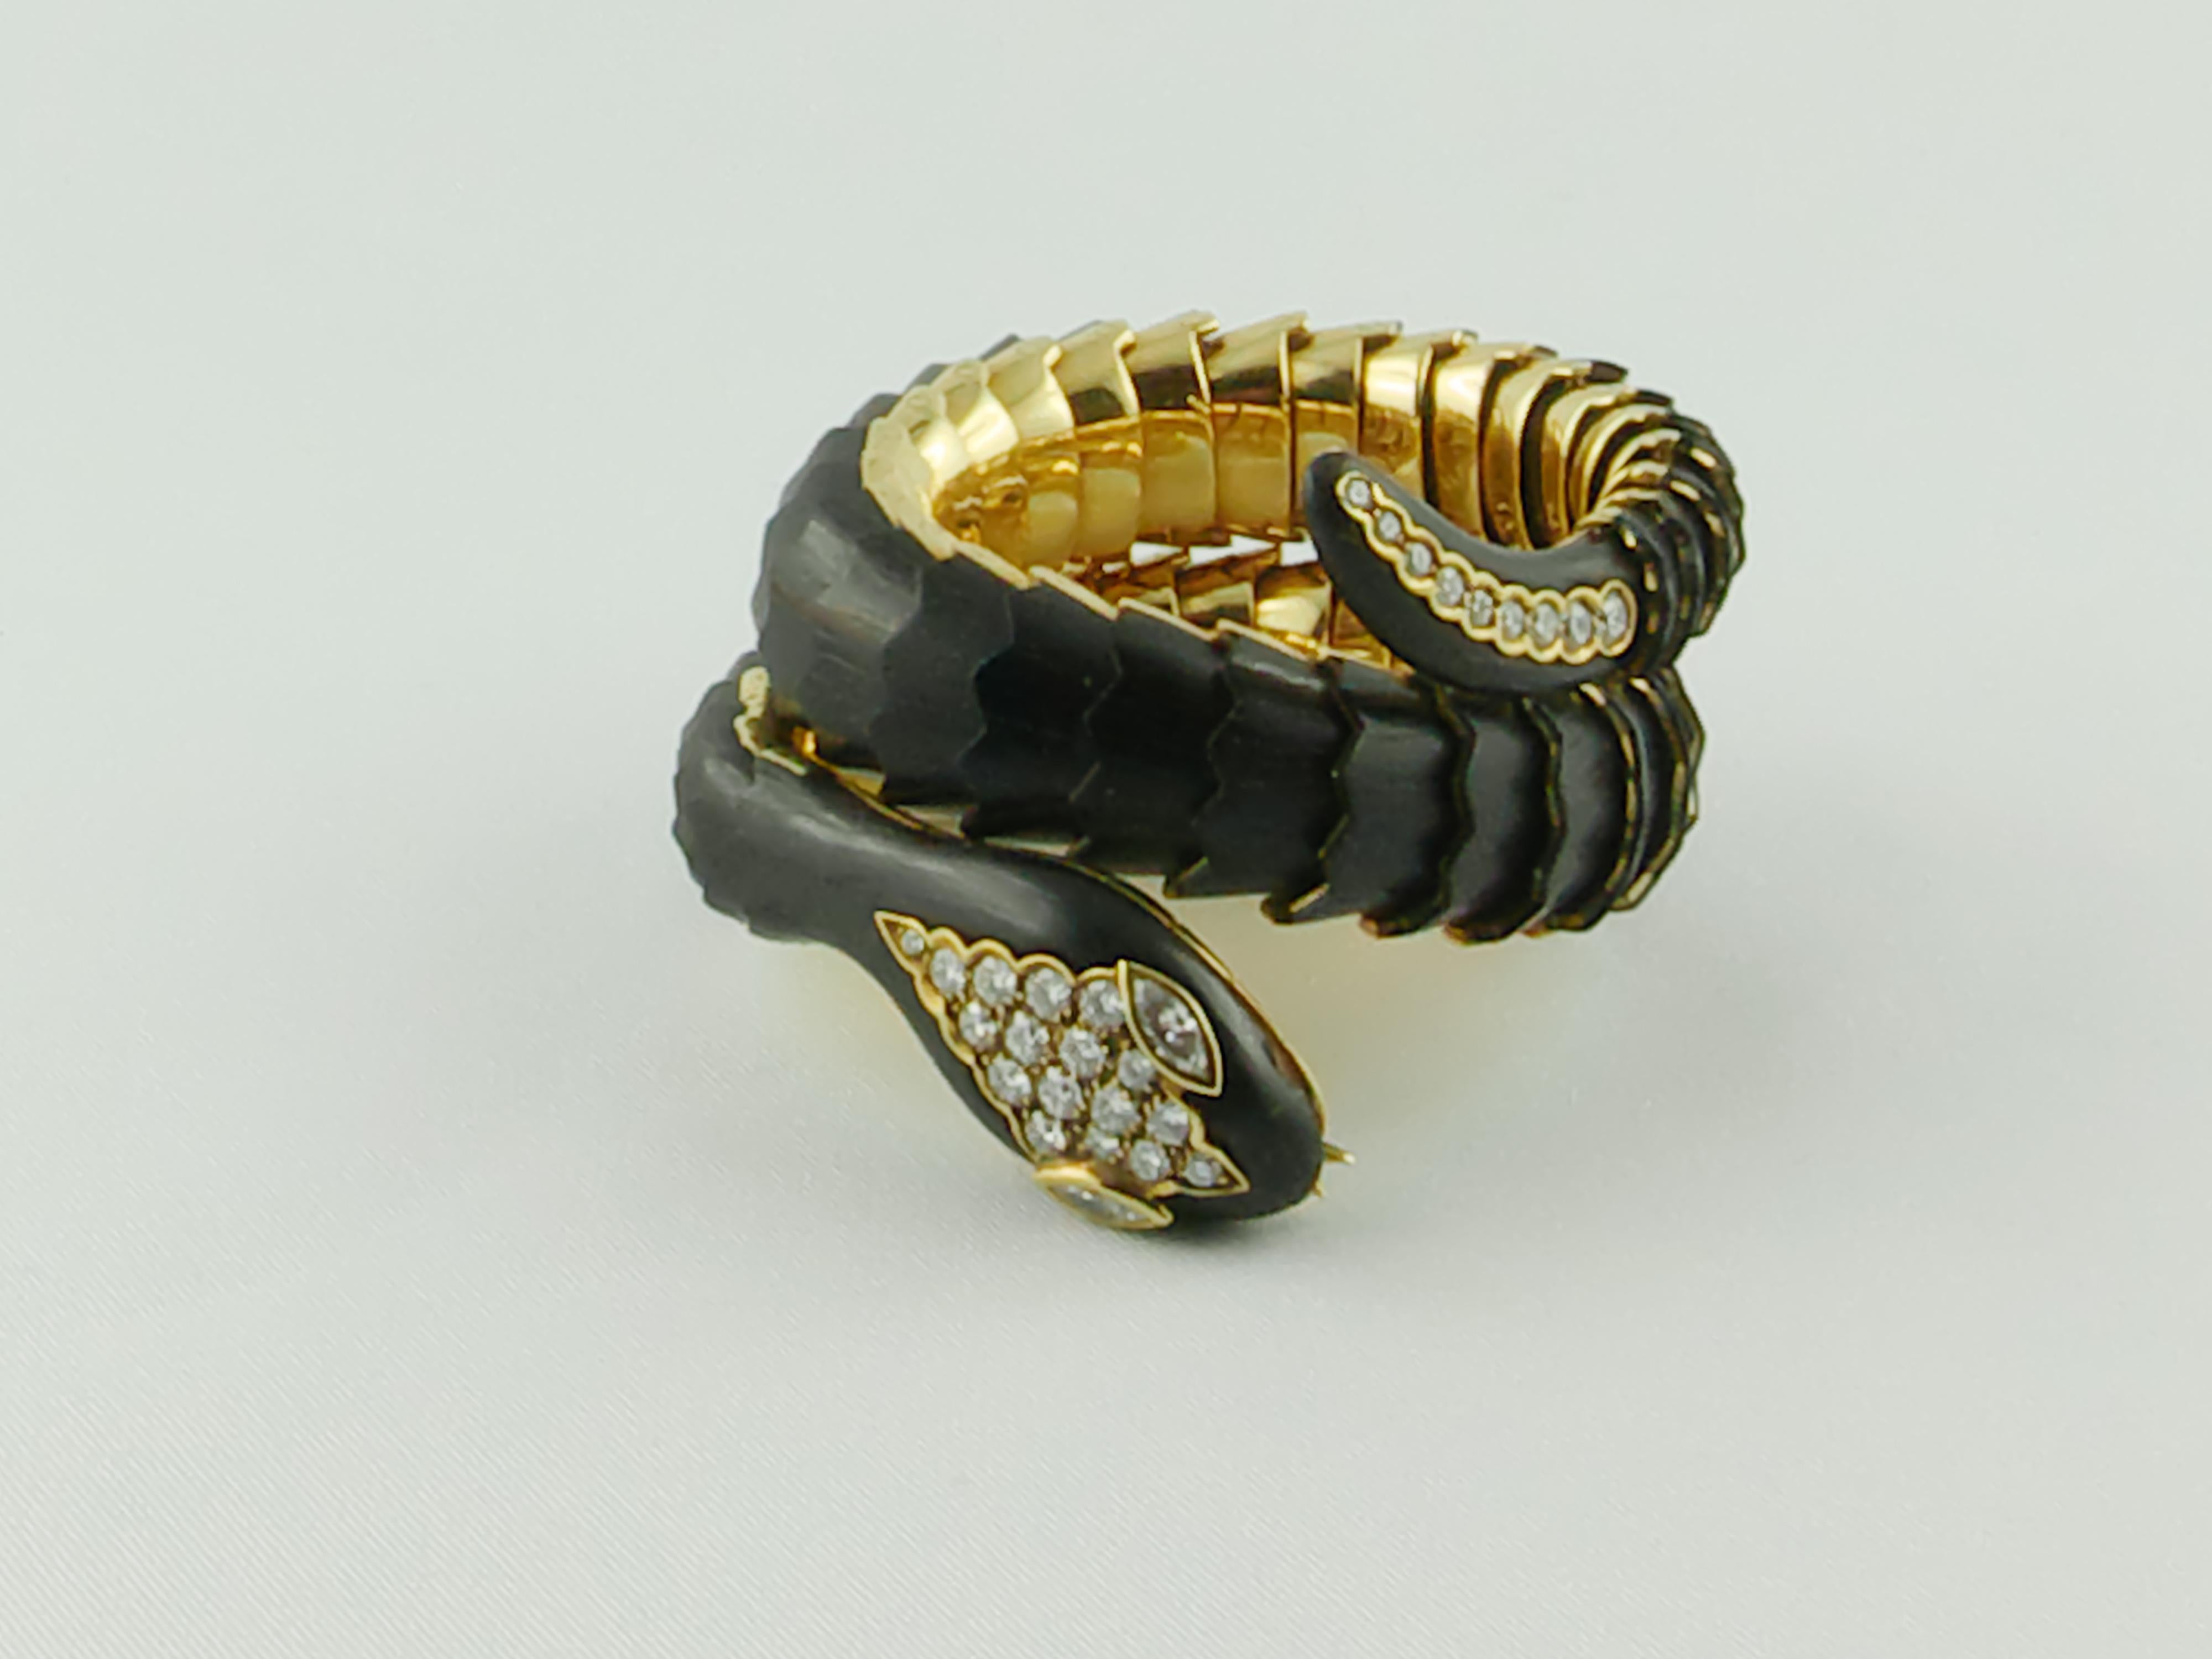 Cet élégant bracelet extensible Illario en or ébène et diamants s'enroule autour du poignet à deux reprises et représente un serpent à écailles artistiquement rendu grâce à des écailles de bois. 
Le bracelet est exceptionnellement réalisé en or